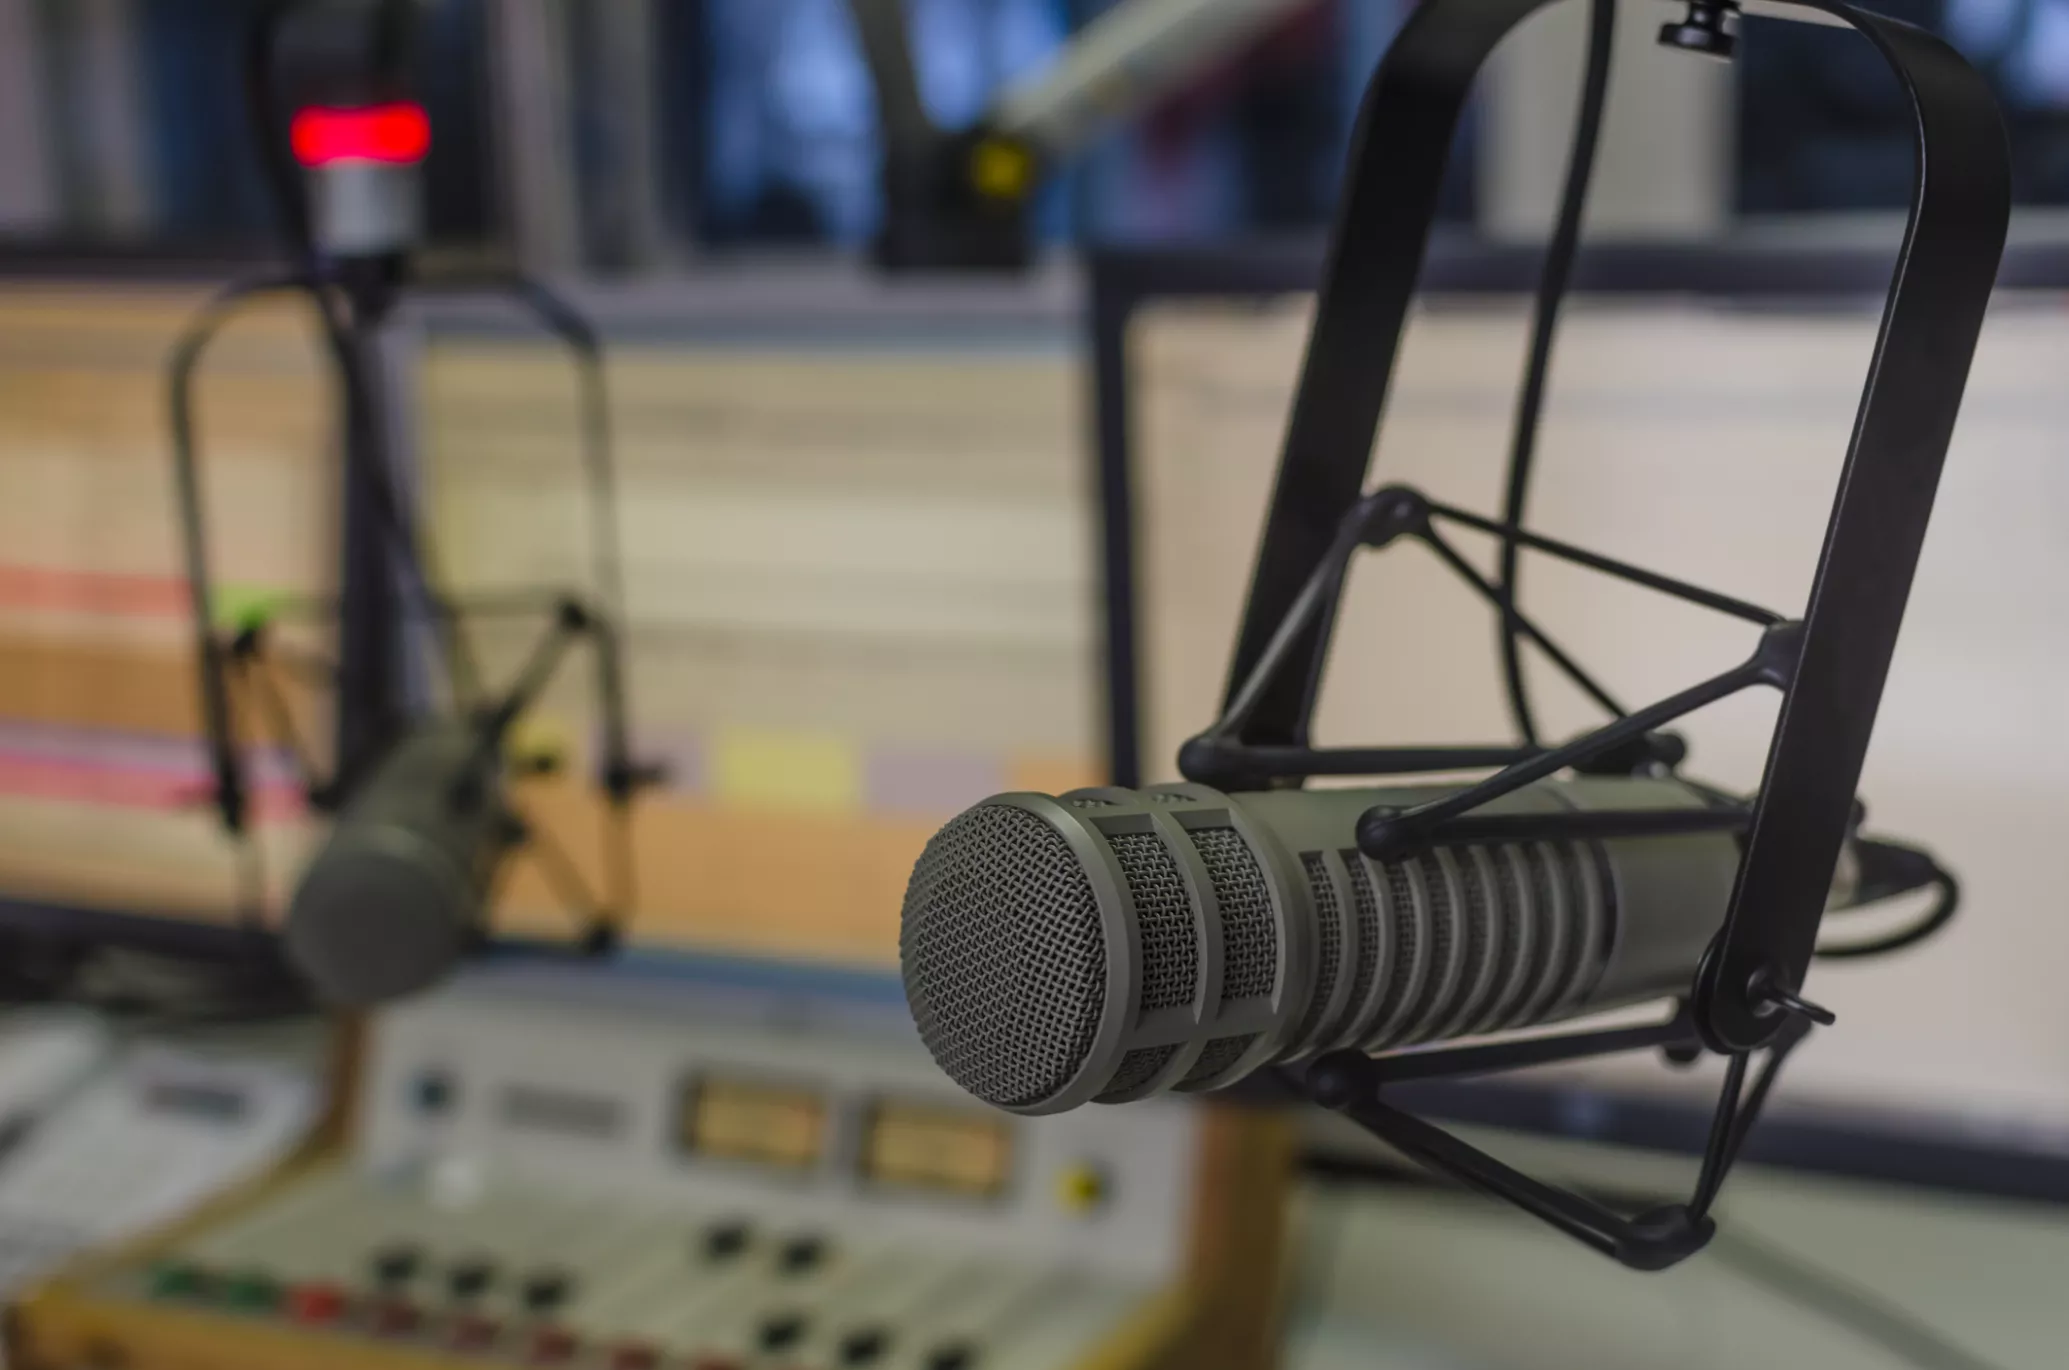 Ринок радіо за три квартали 2021 року: бюджети зросли на 43%